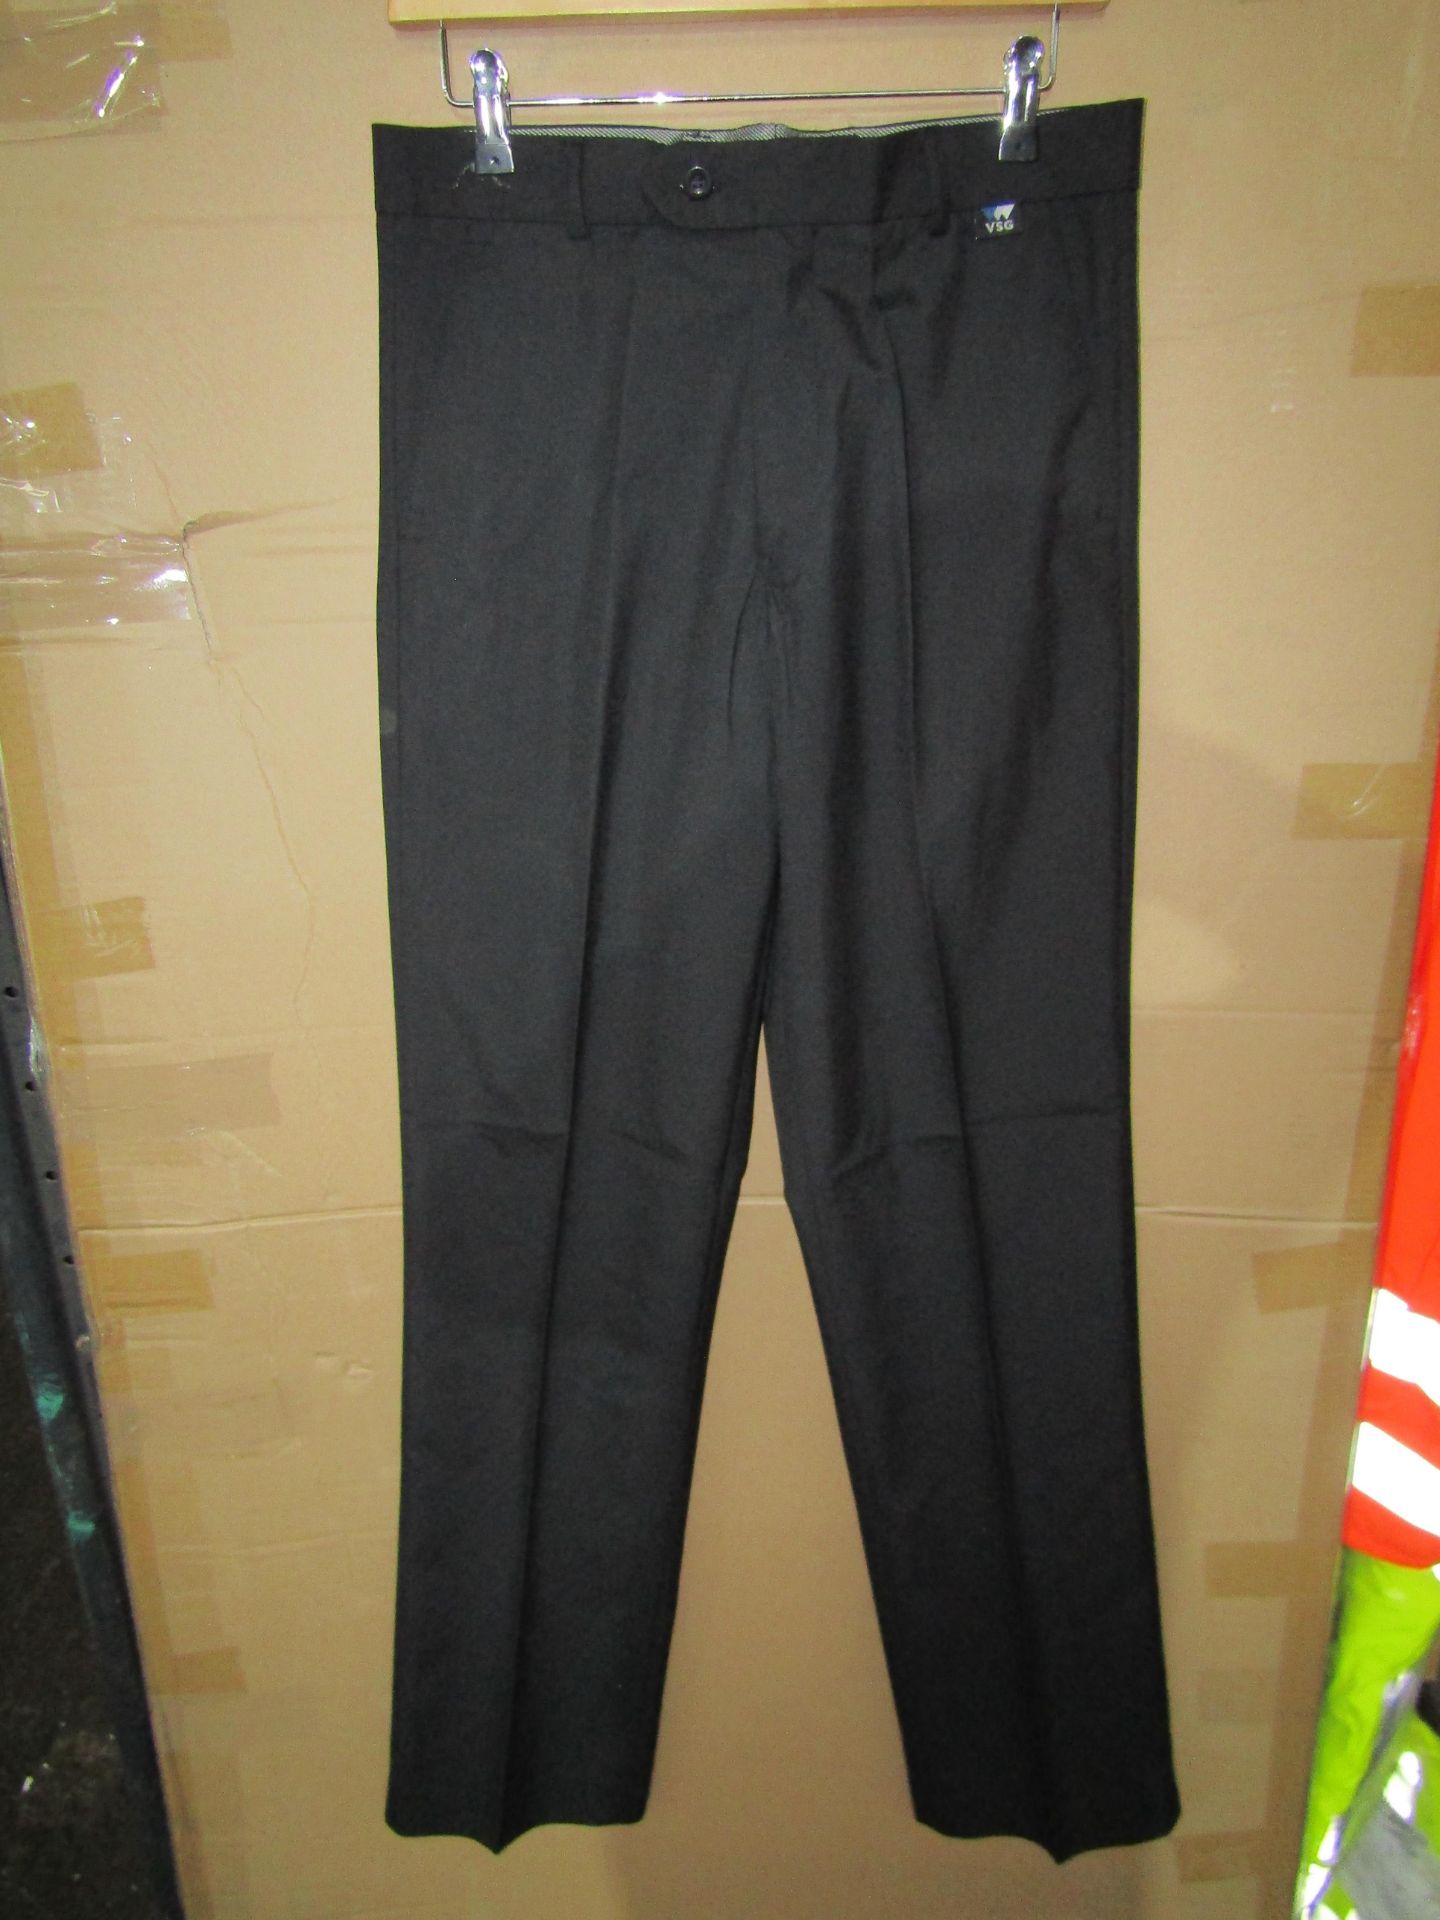 Smart Wear - Black Trousers - Size 32L - New & Packaged.